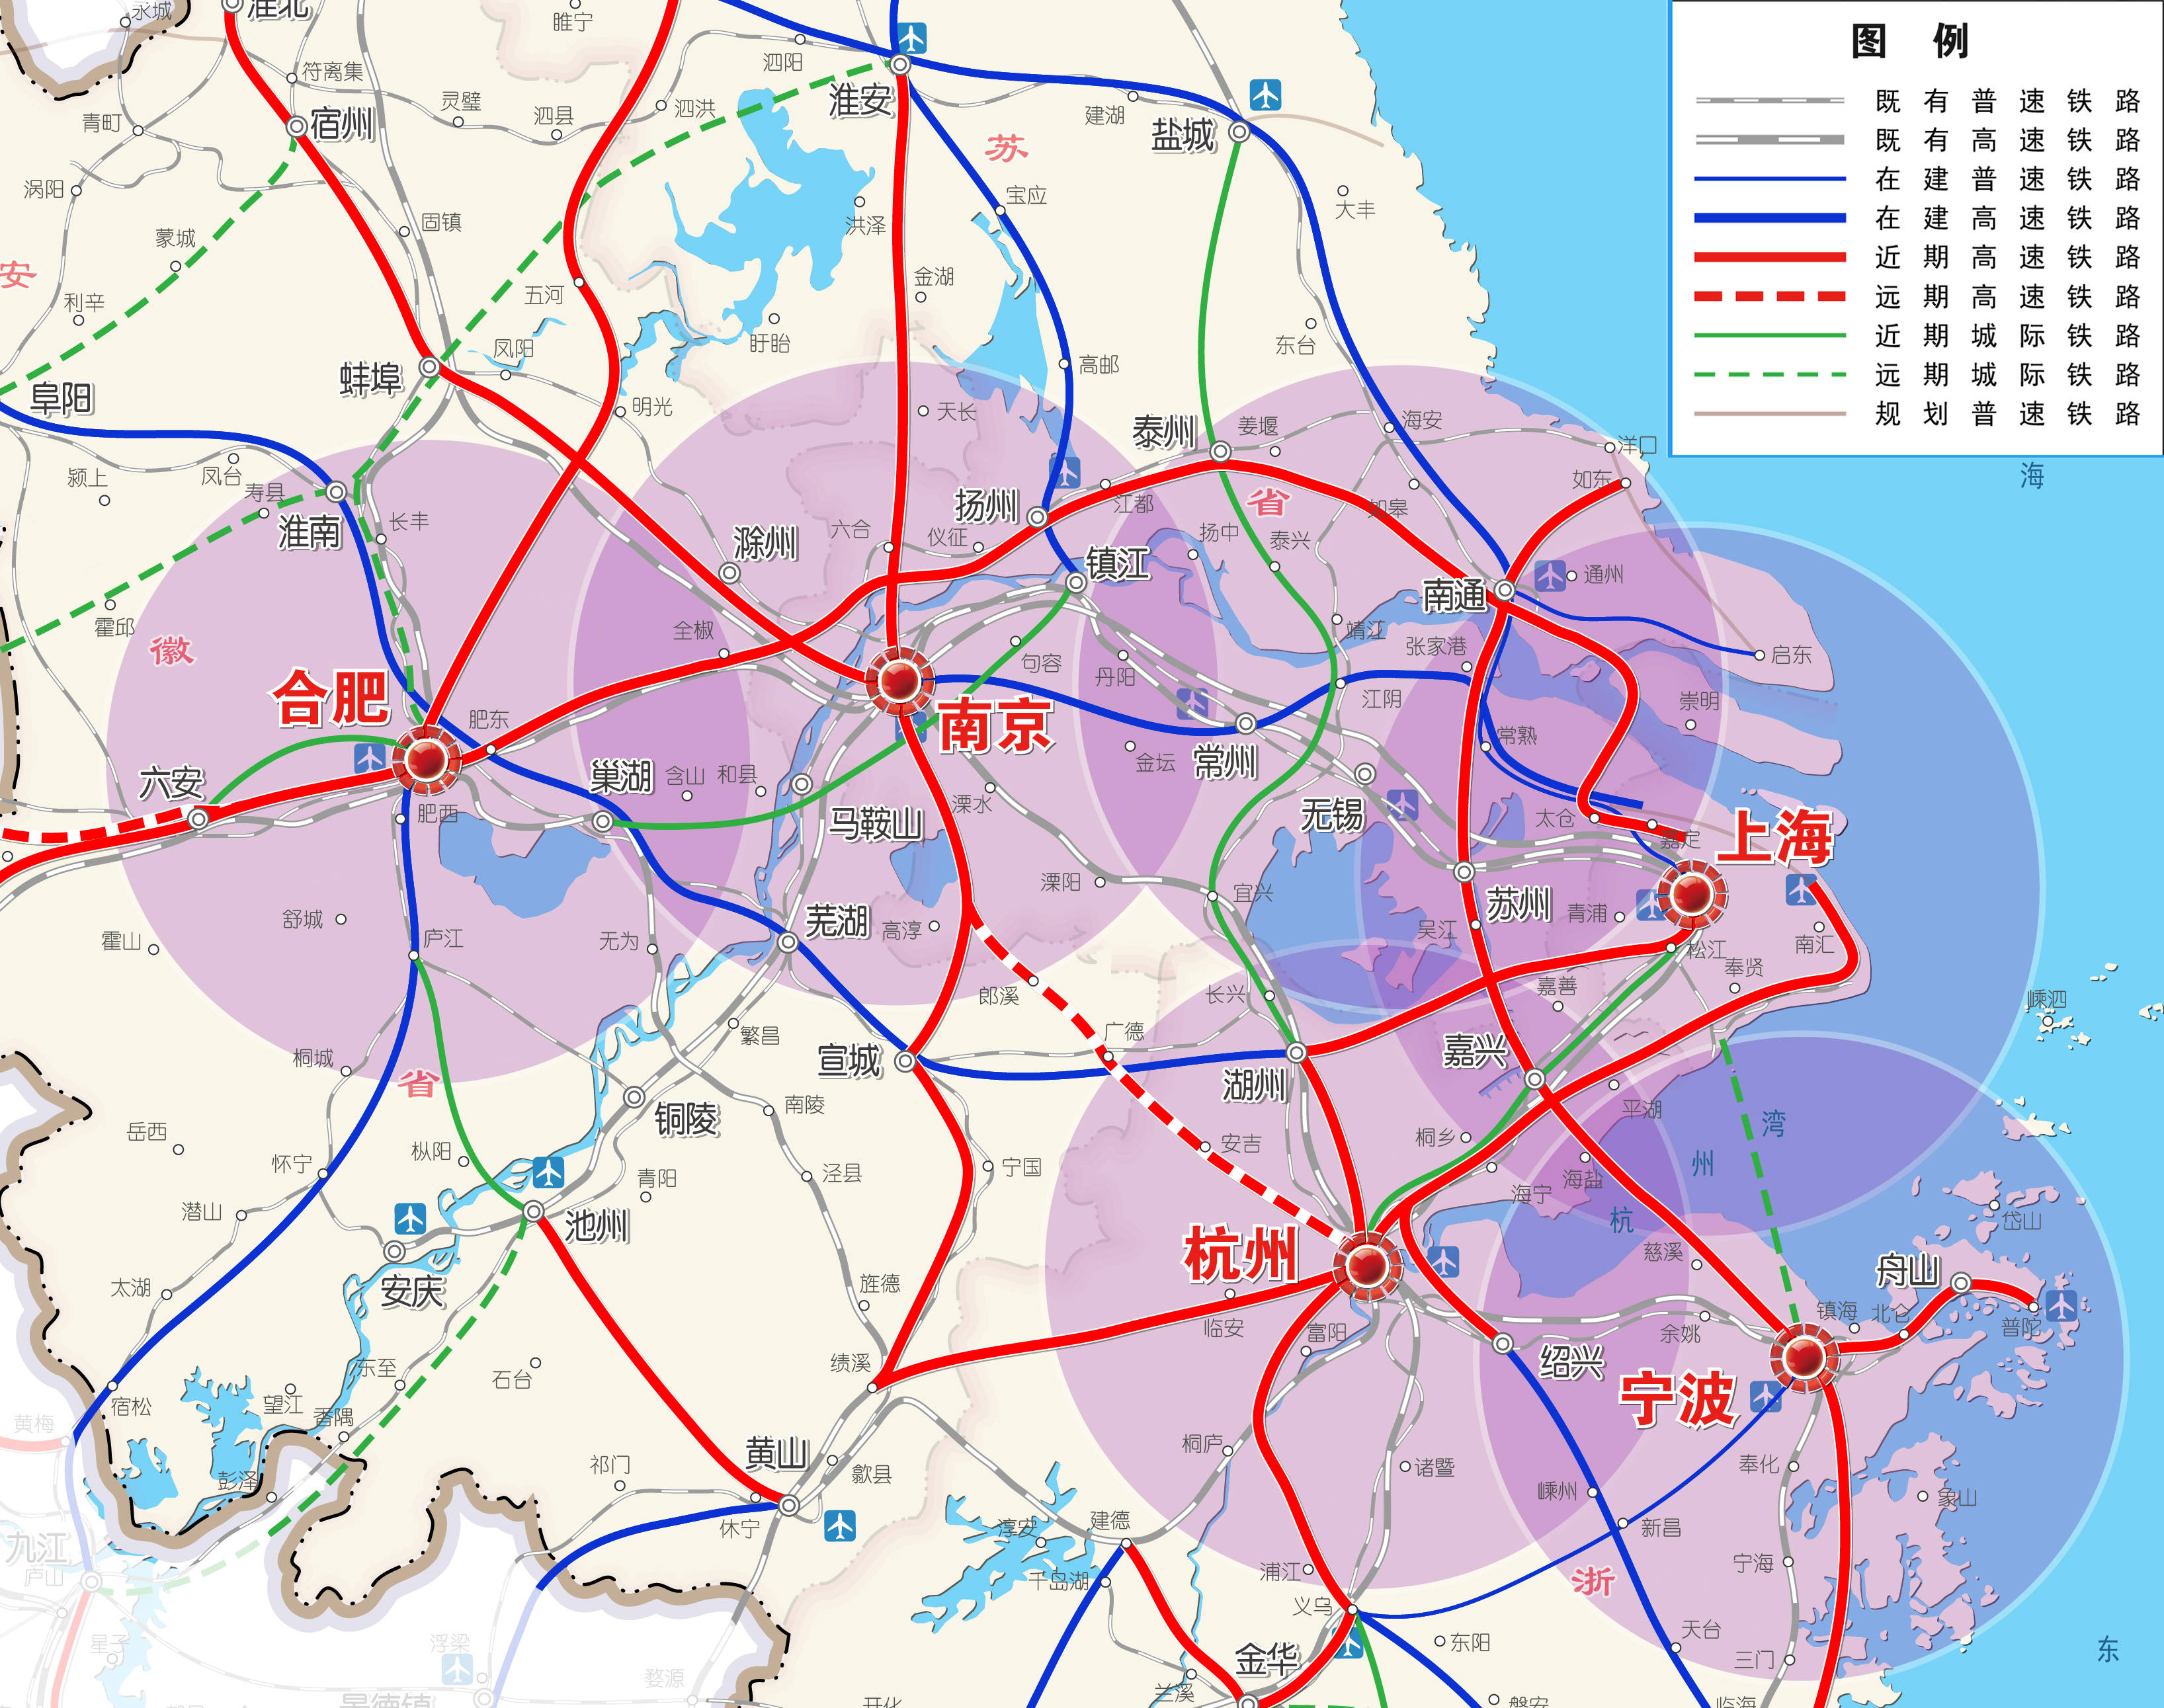 远期高铁(红色虚线)/图片源自长三角交通运输更高质量一体化发展规划